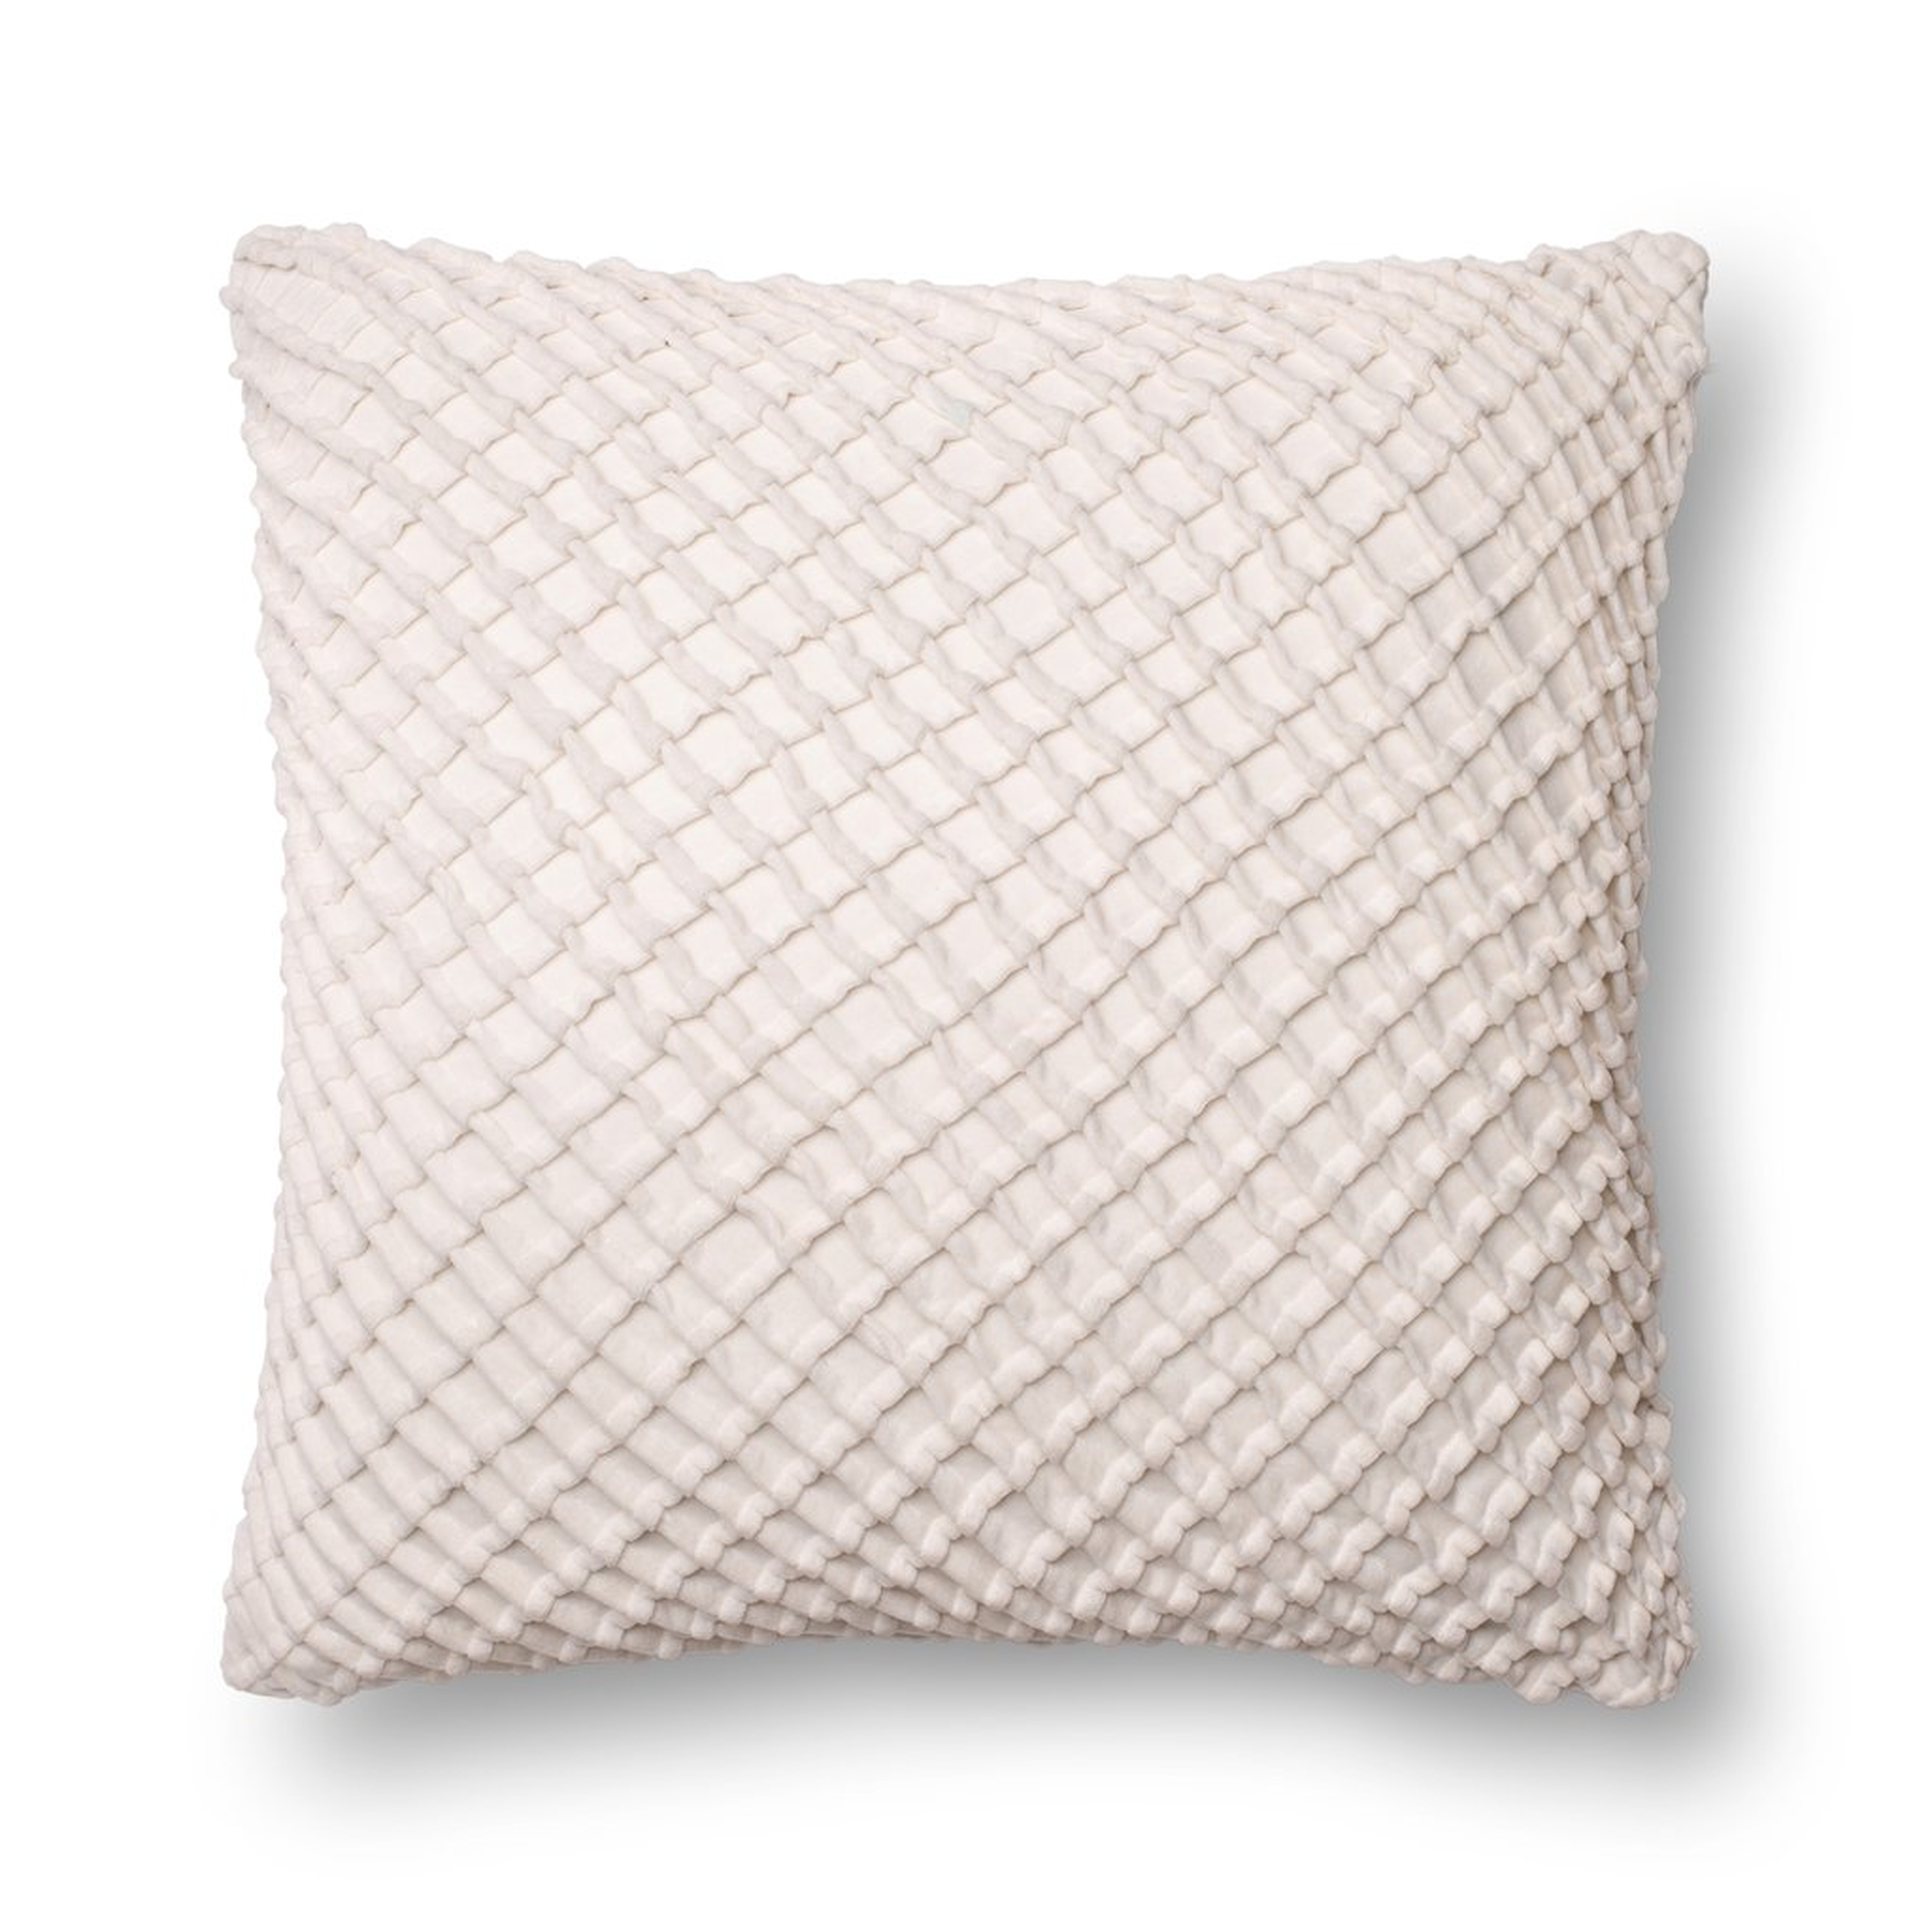 Cris-Cros Velvet Throw Pillow, 22" x 22", White - Loma Threads